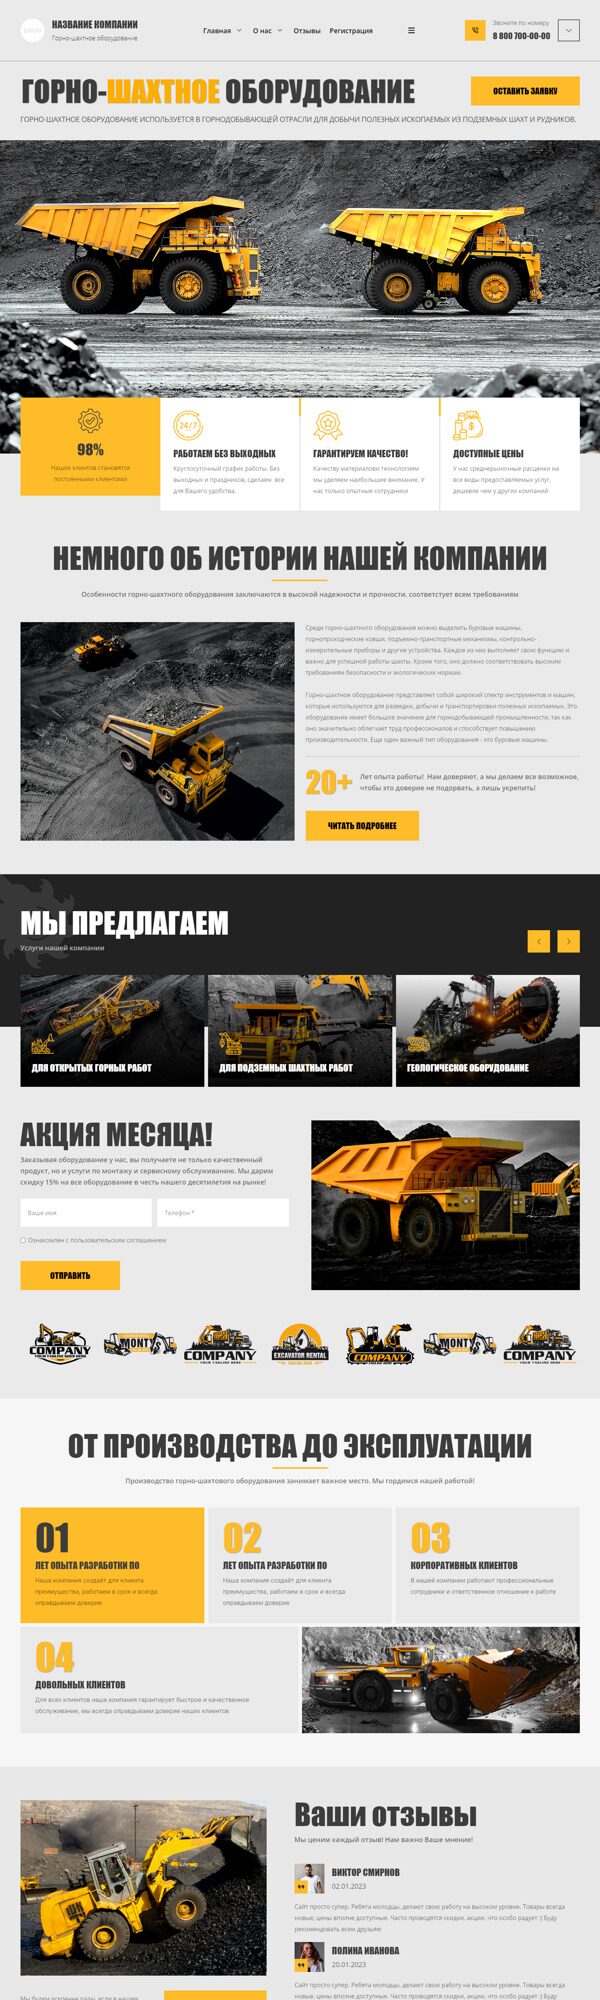 Готовый Сайт-Бизнес № 4987275 - Горно-шахтное оборудование (Десктопная версия)